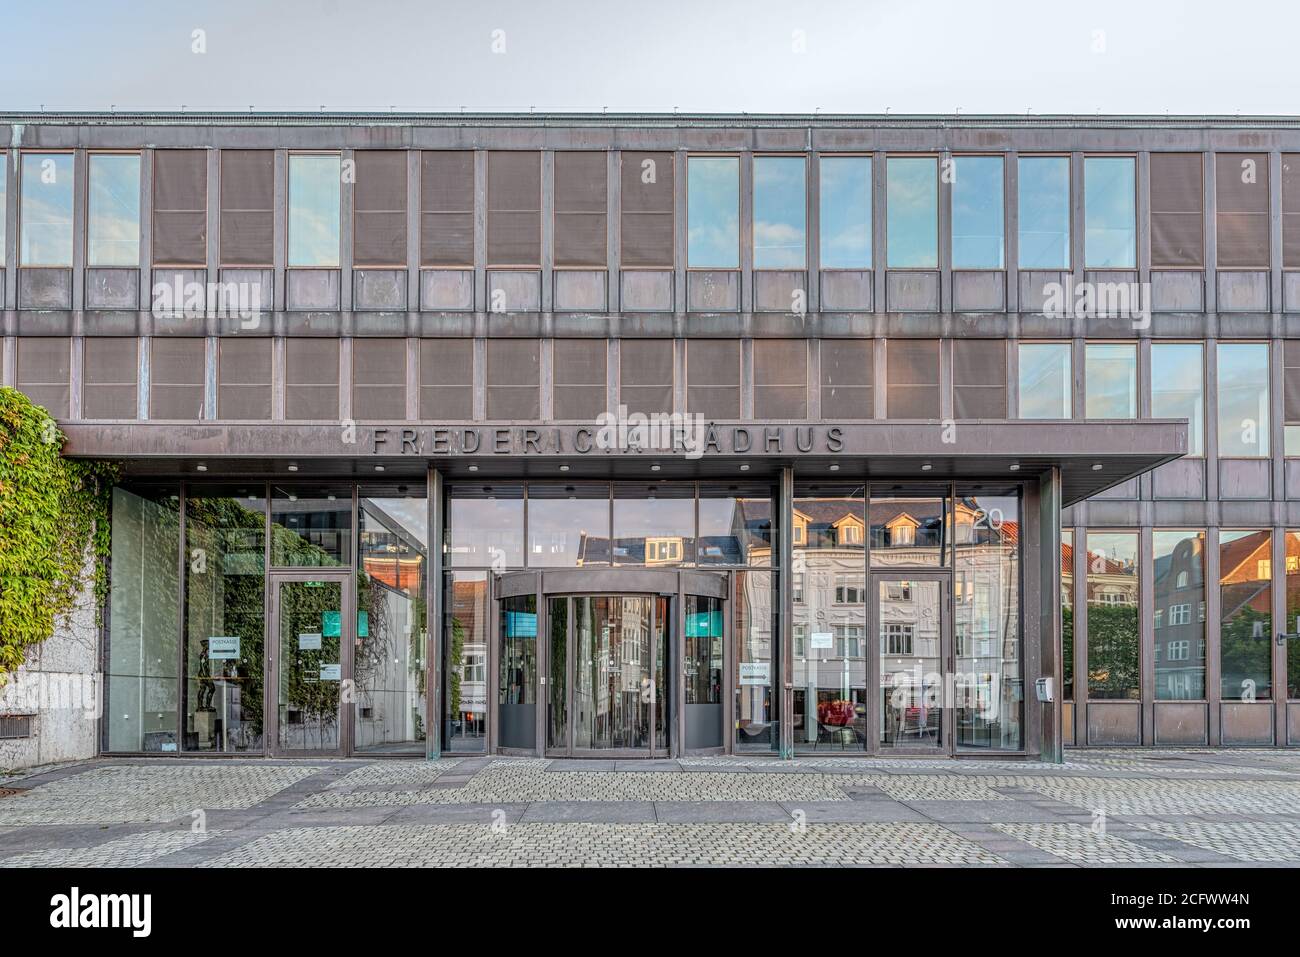 Eintritt in das moderne Rathaus von fredericia, Dänemark, 8. Juni 2020 Stockfoto